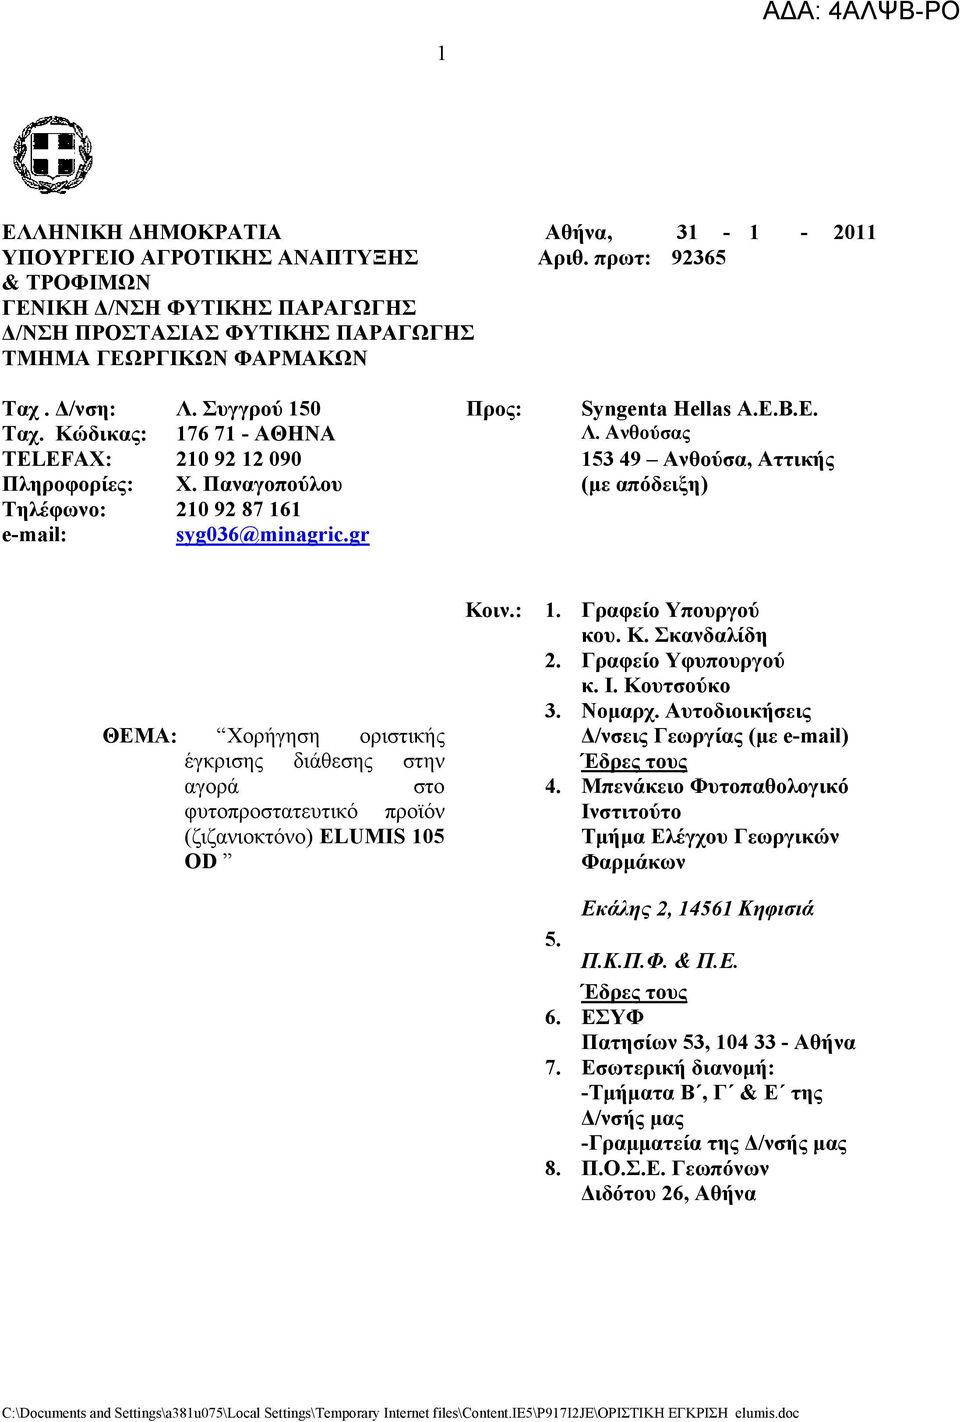 Παναγοπούλου (με απόδειξη) Τηλέφωνο: 210 92 87 161 e-mail: syg036@minagric.gr ΘΕΜΑ: Χοργηση οριστικς έγκρισης διάθεσης στην αγορά στο φυτοπροστατευτικό προϊόν (ζιζανιοκτόνο) ELUMIS 105 OD Κοιν.: 1.